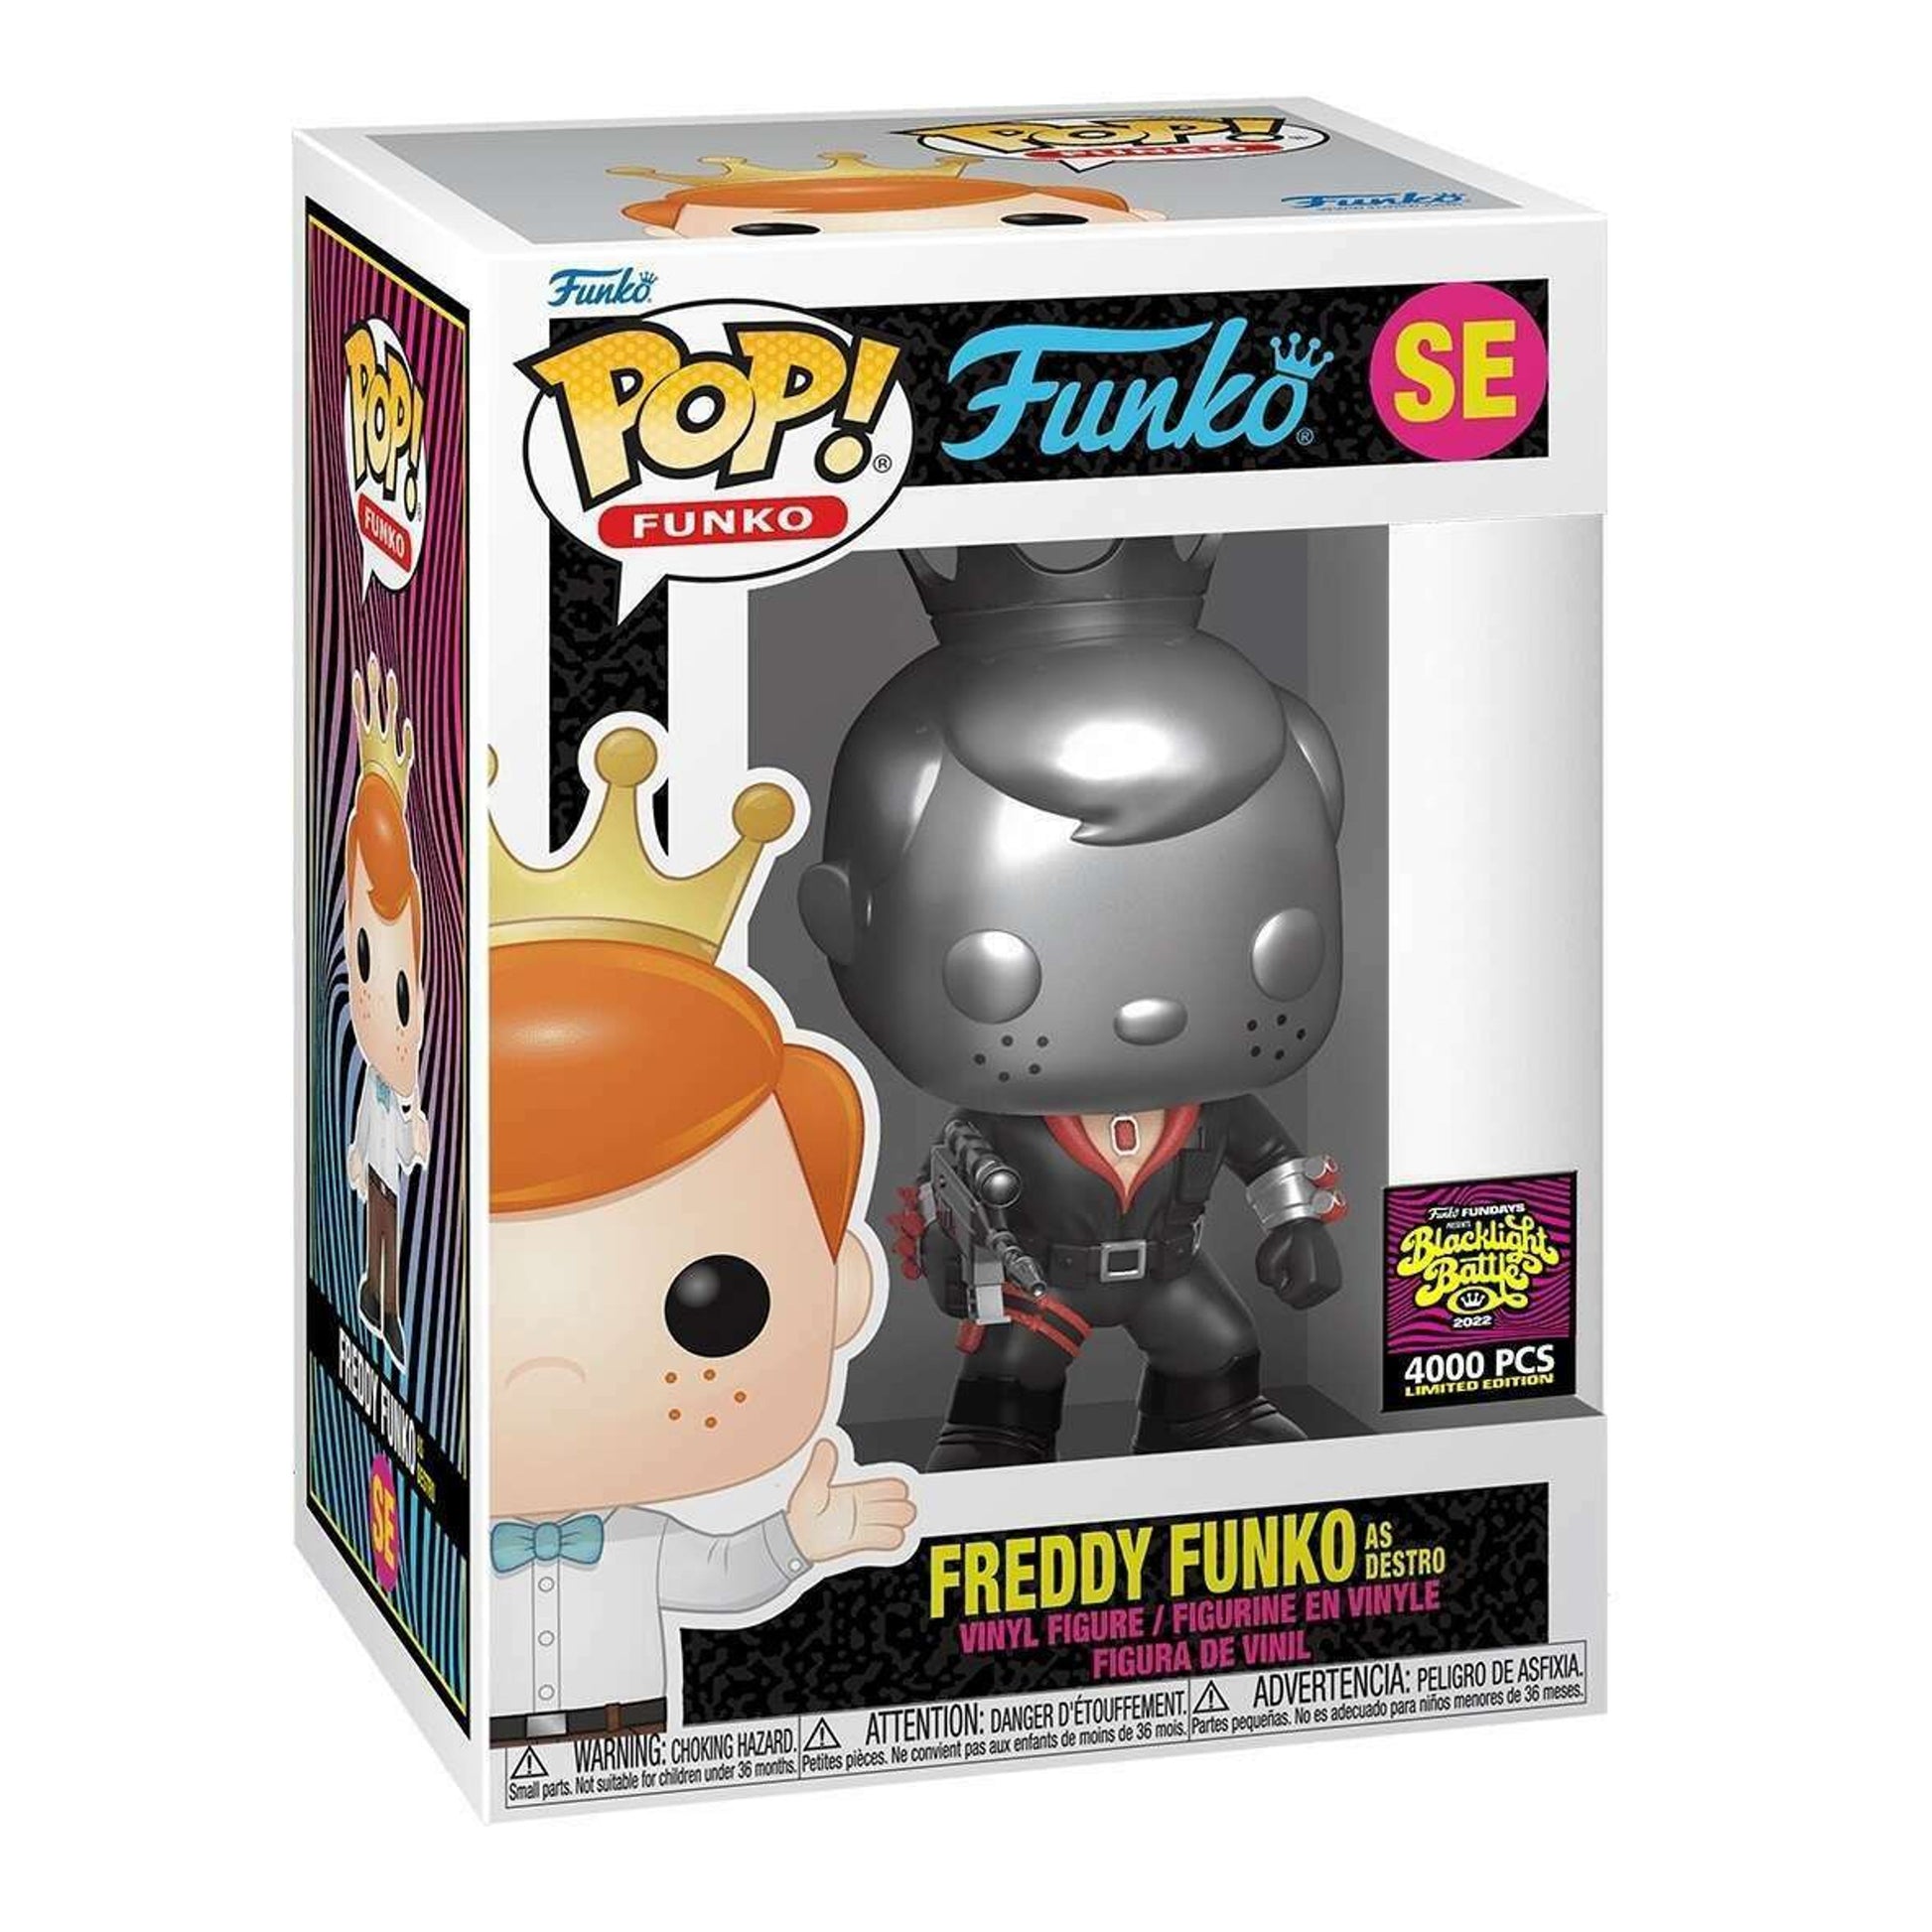 Freddy Funko As Destro Funko Pop!